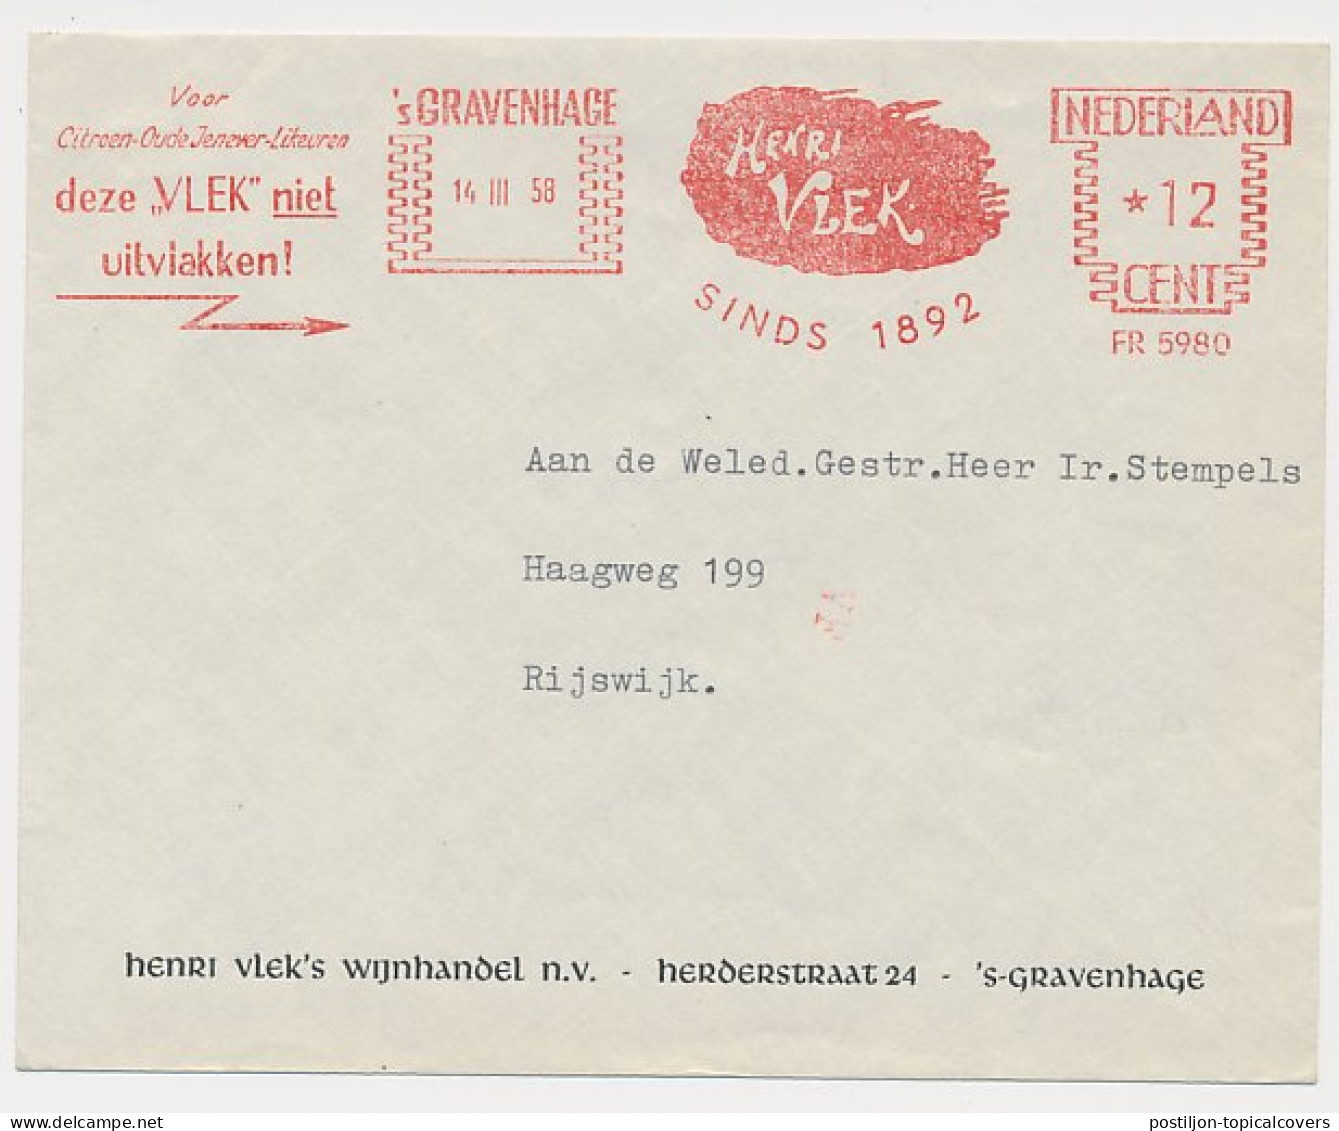 Meter cover Netherlands 1958 Alcohol - Henri Vlek - Lemeon genever - Liquor